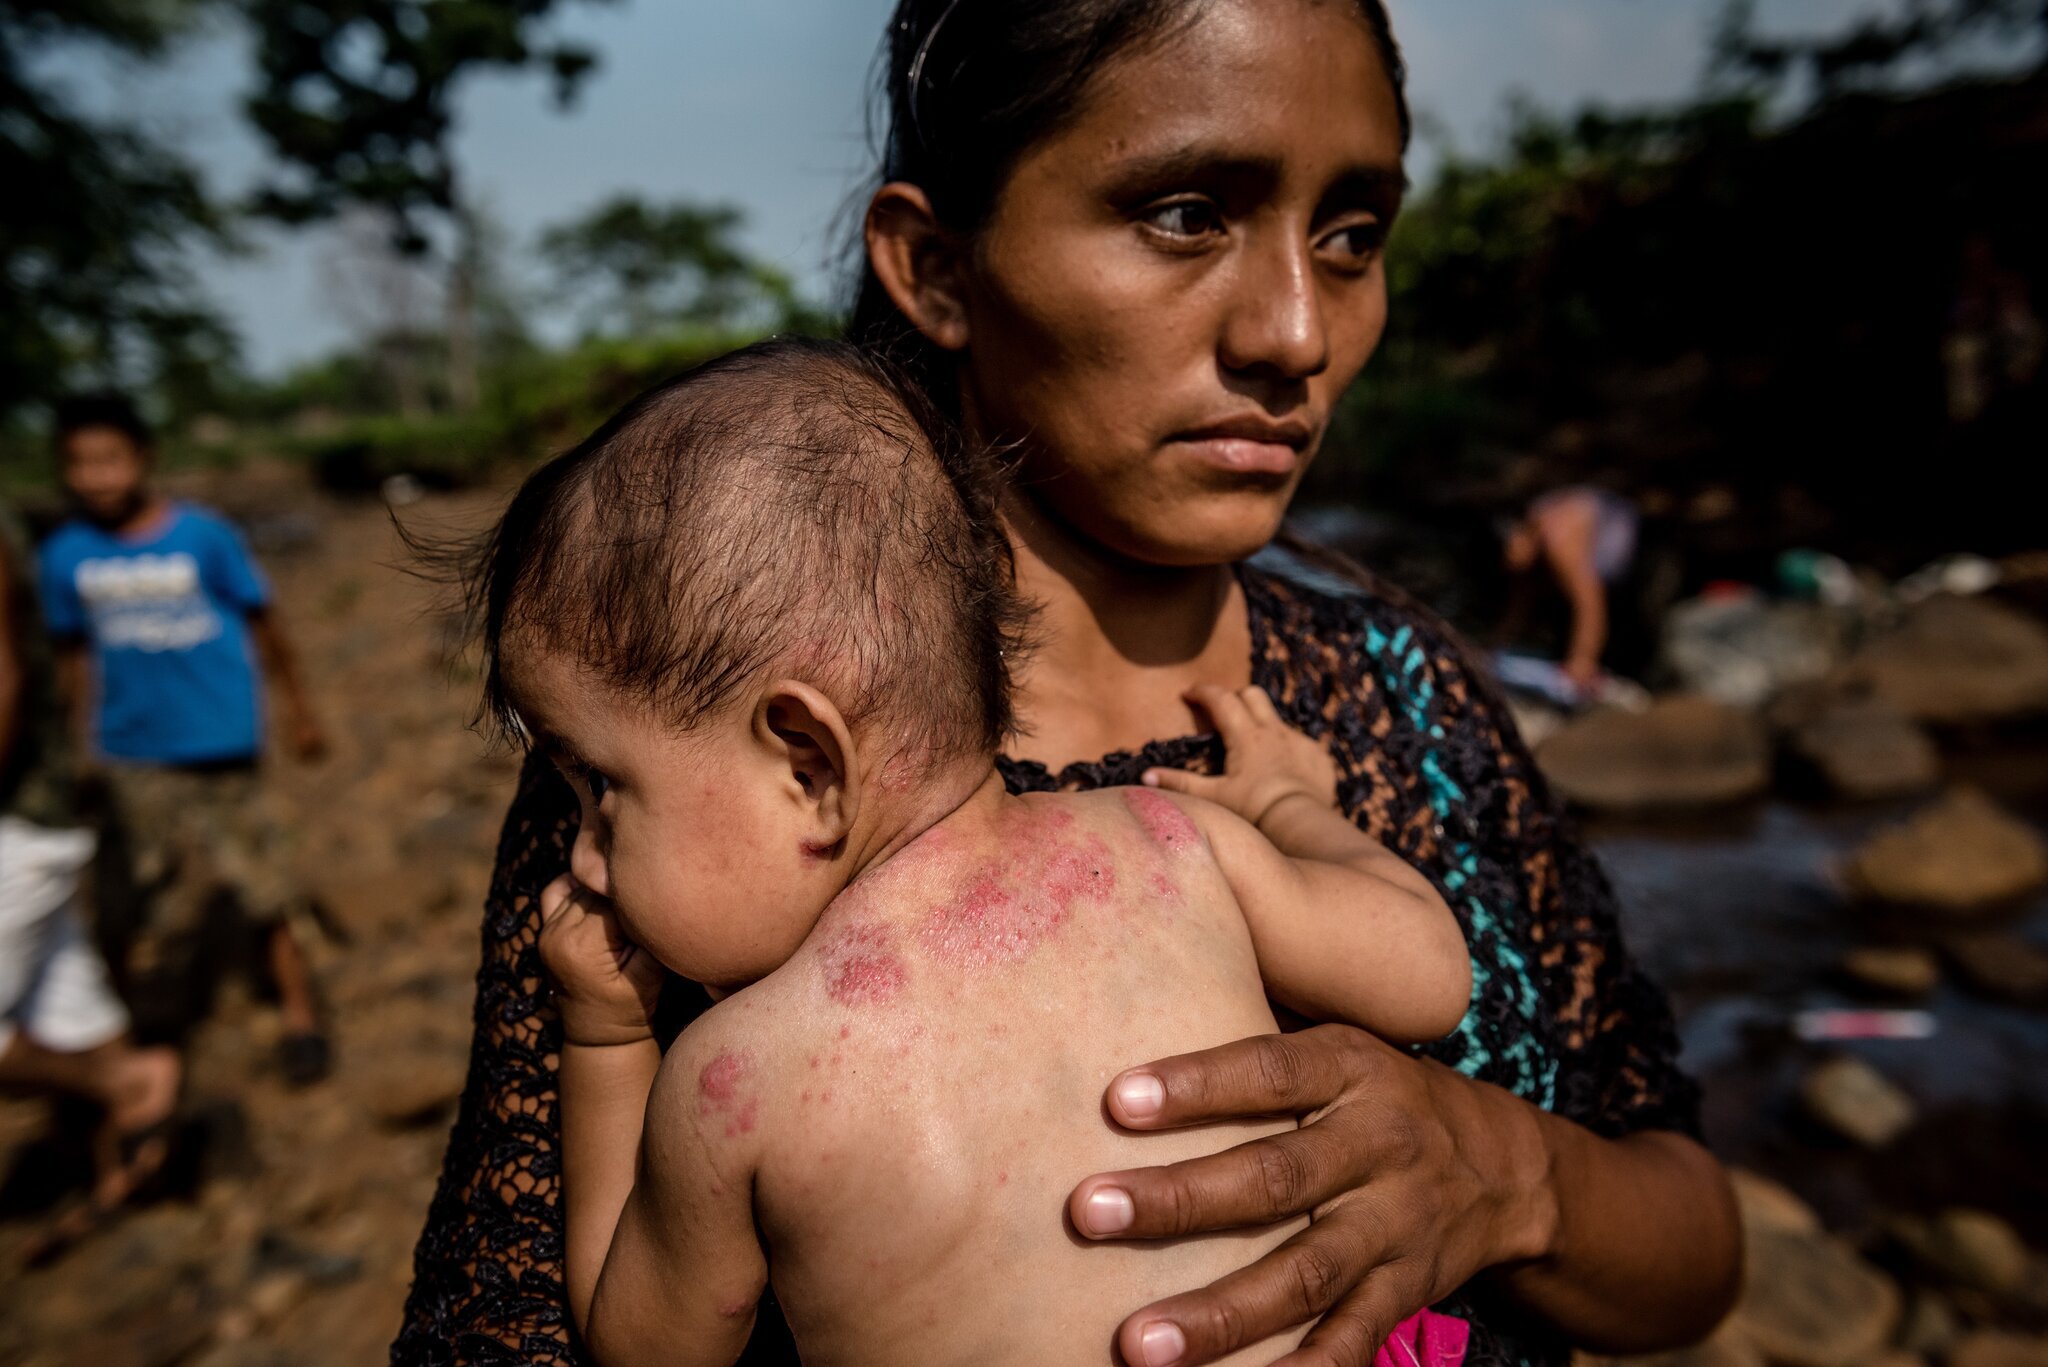 Індіанка (indigena) з донькою, у якої шкірна інфекція — згідно з діагнозом, від забрудненої води: Гватемала, Nuevo Paraíso ("Новий рай")